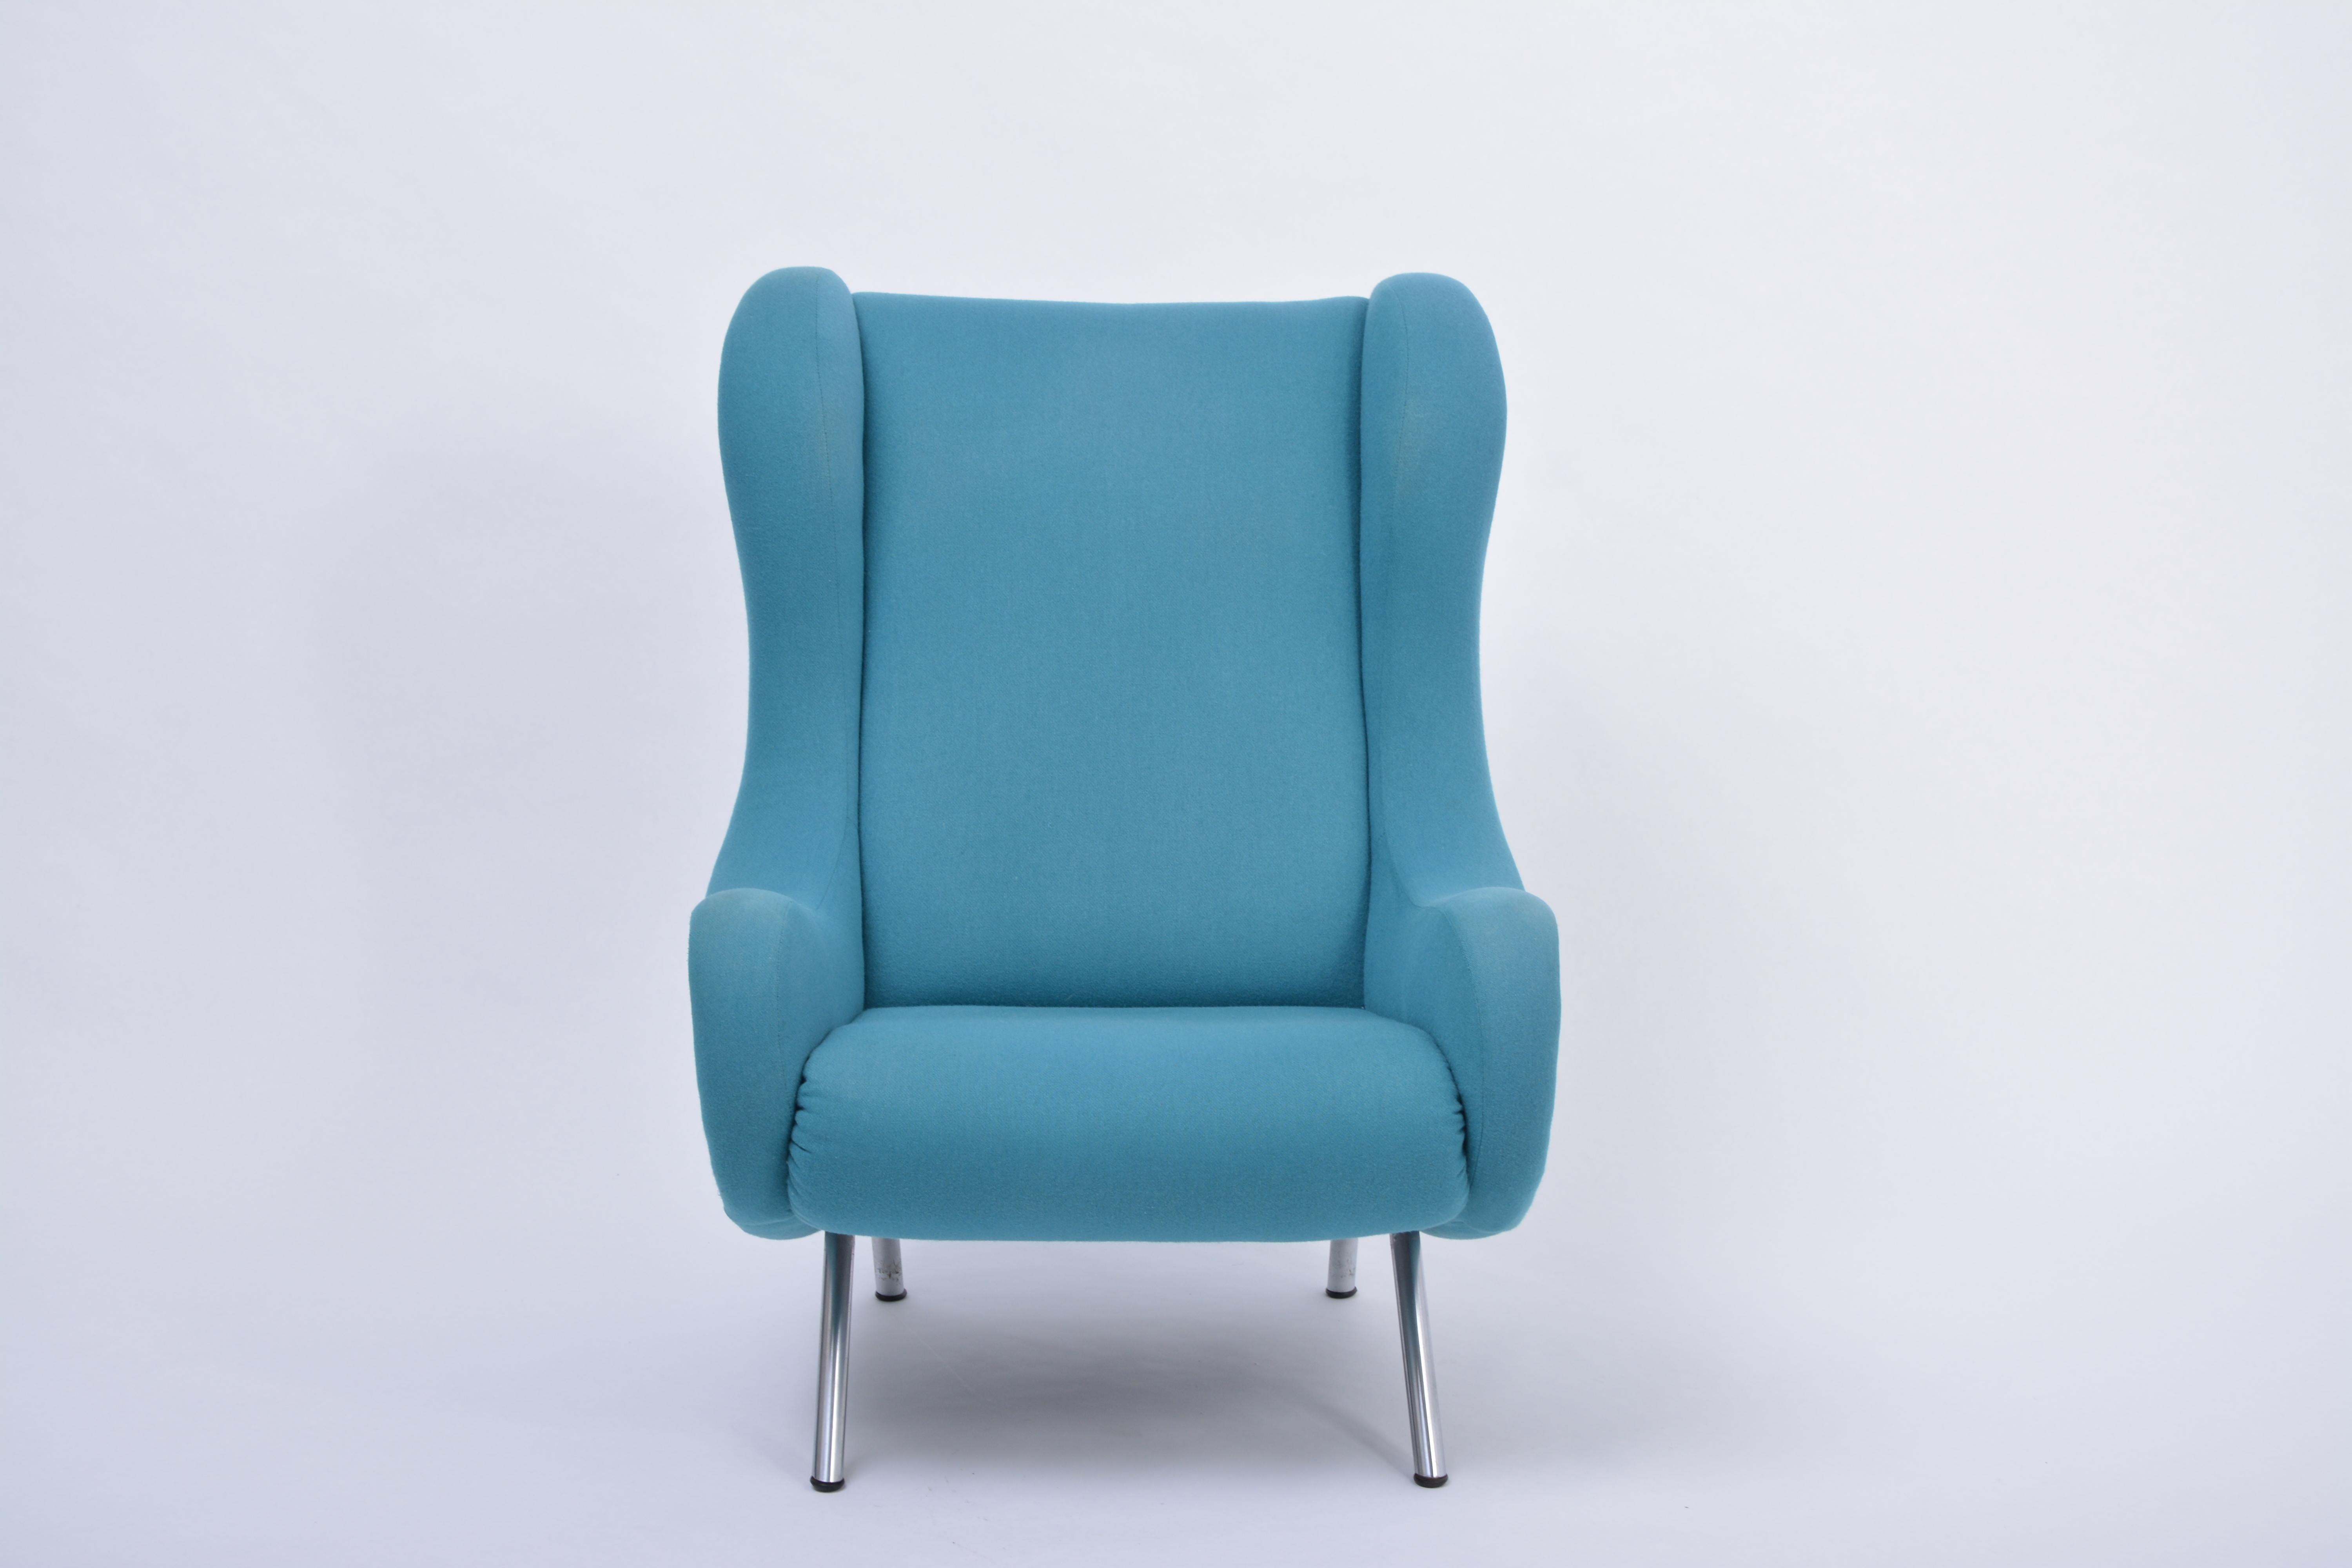 Chaise de salon senior Marco Zanuso bleue, moderne du milieu du siècle, retapissée
Marco Zanuso a conçu son emblématique fauteuil de salon 